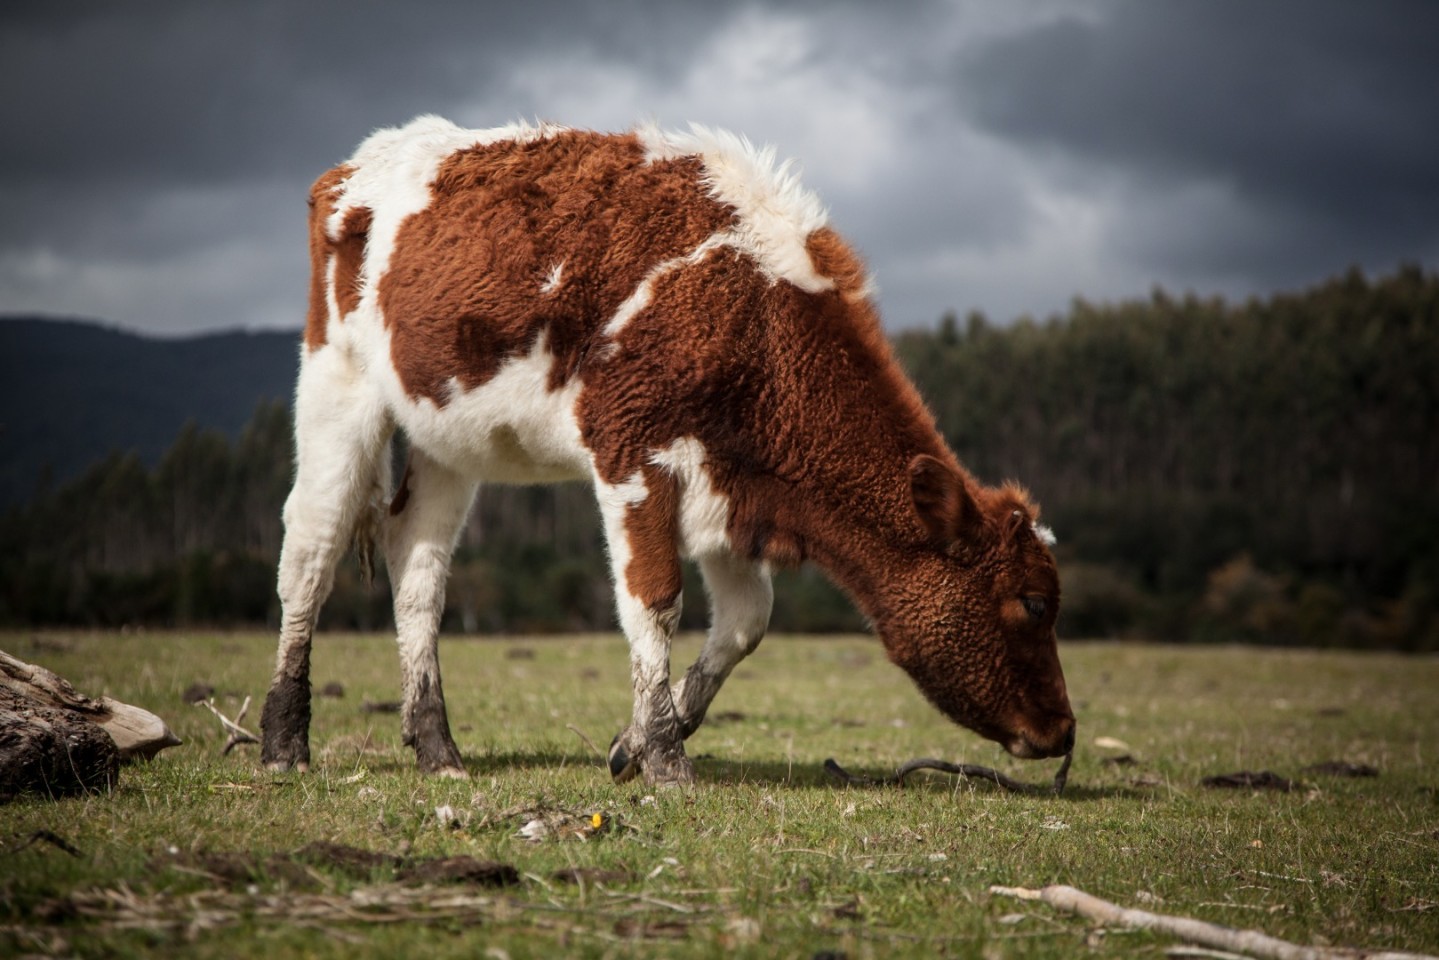 تستطيع الميكروبات في معدة الأبقار المساعدة على إعادة تدوير البلاستيك!